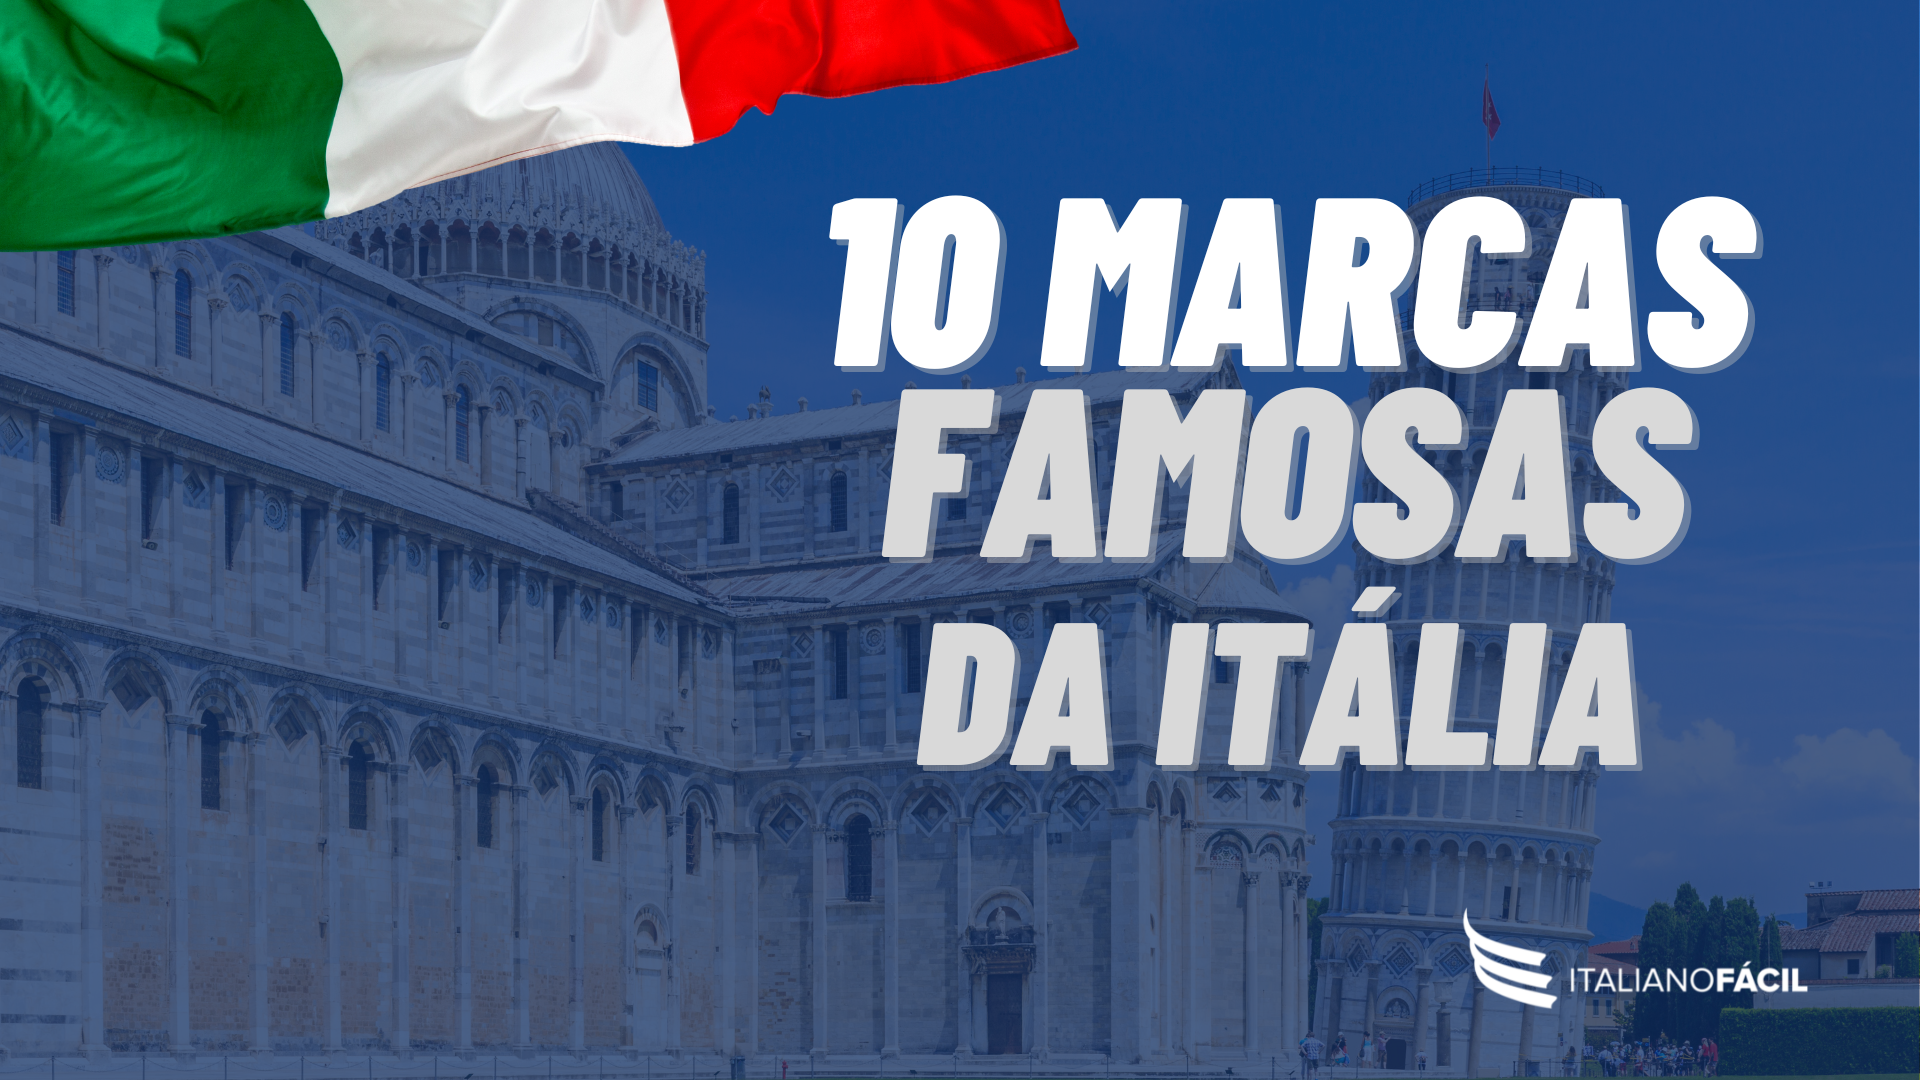 10 marcas famosas da Itália - Blog do Italiano Fácil - Aprender